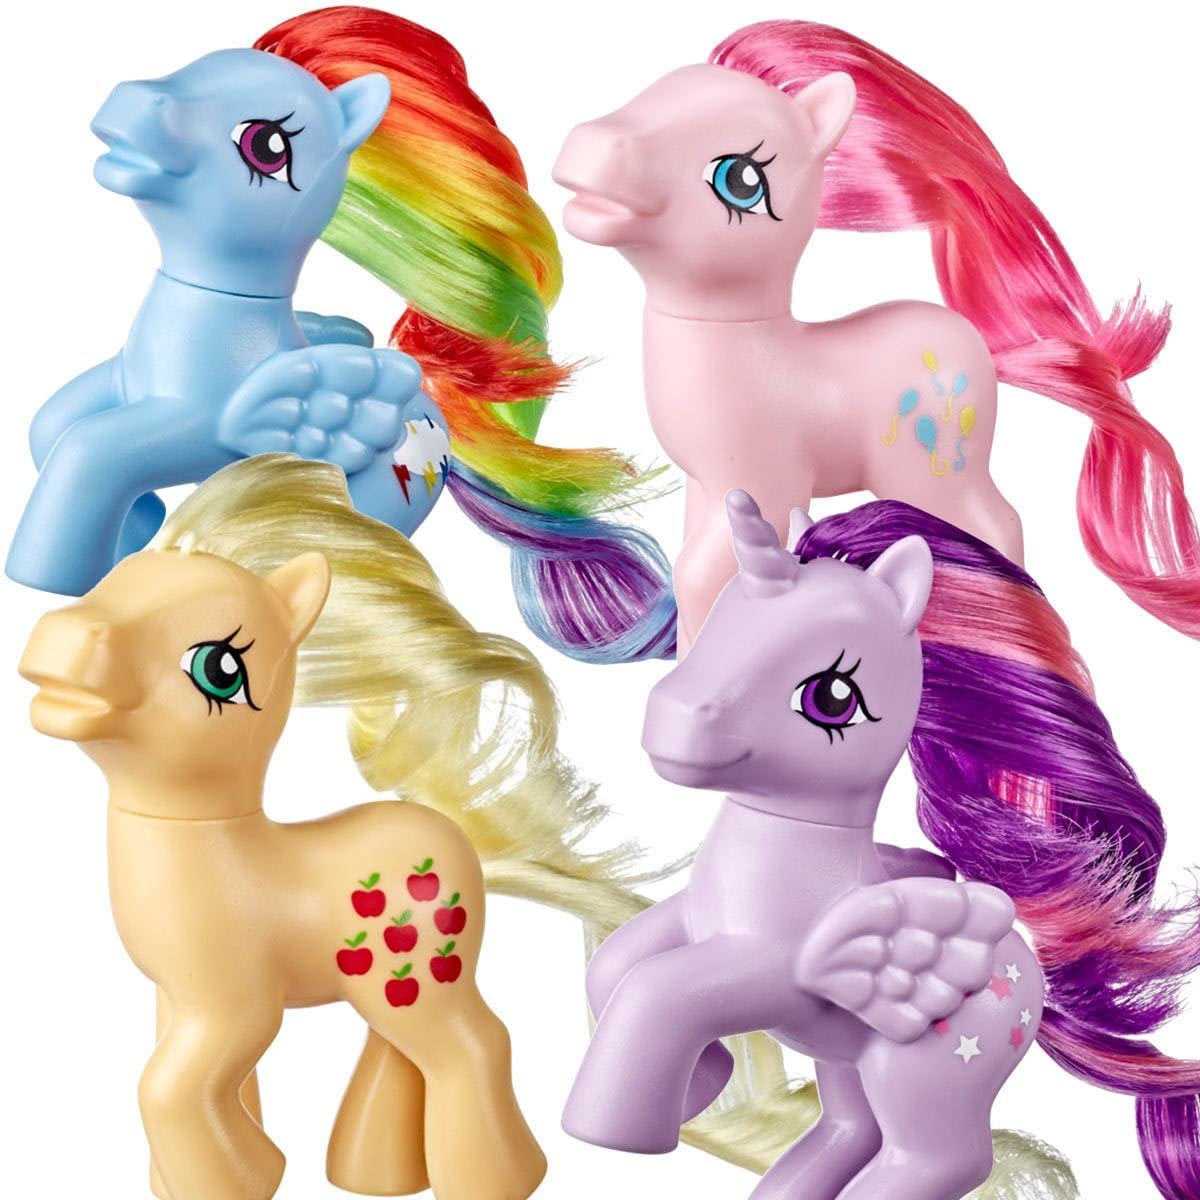 MLP Retro Ponies Figure 4-Pack 1